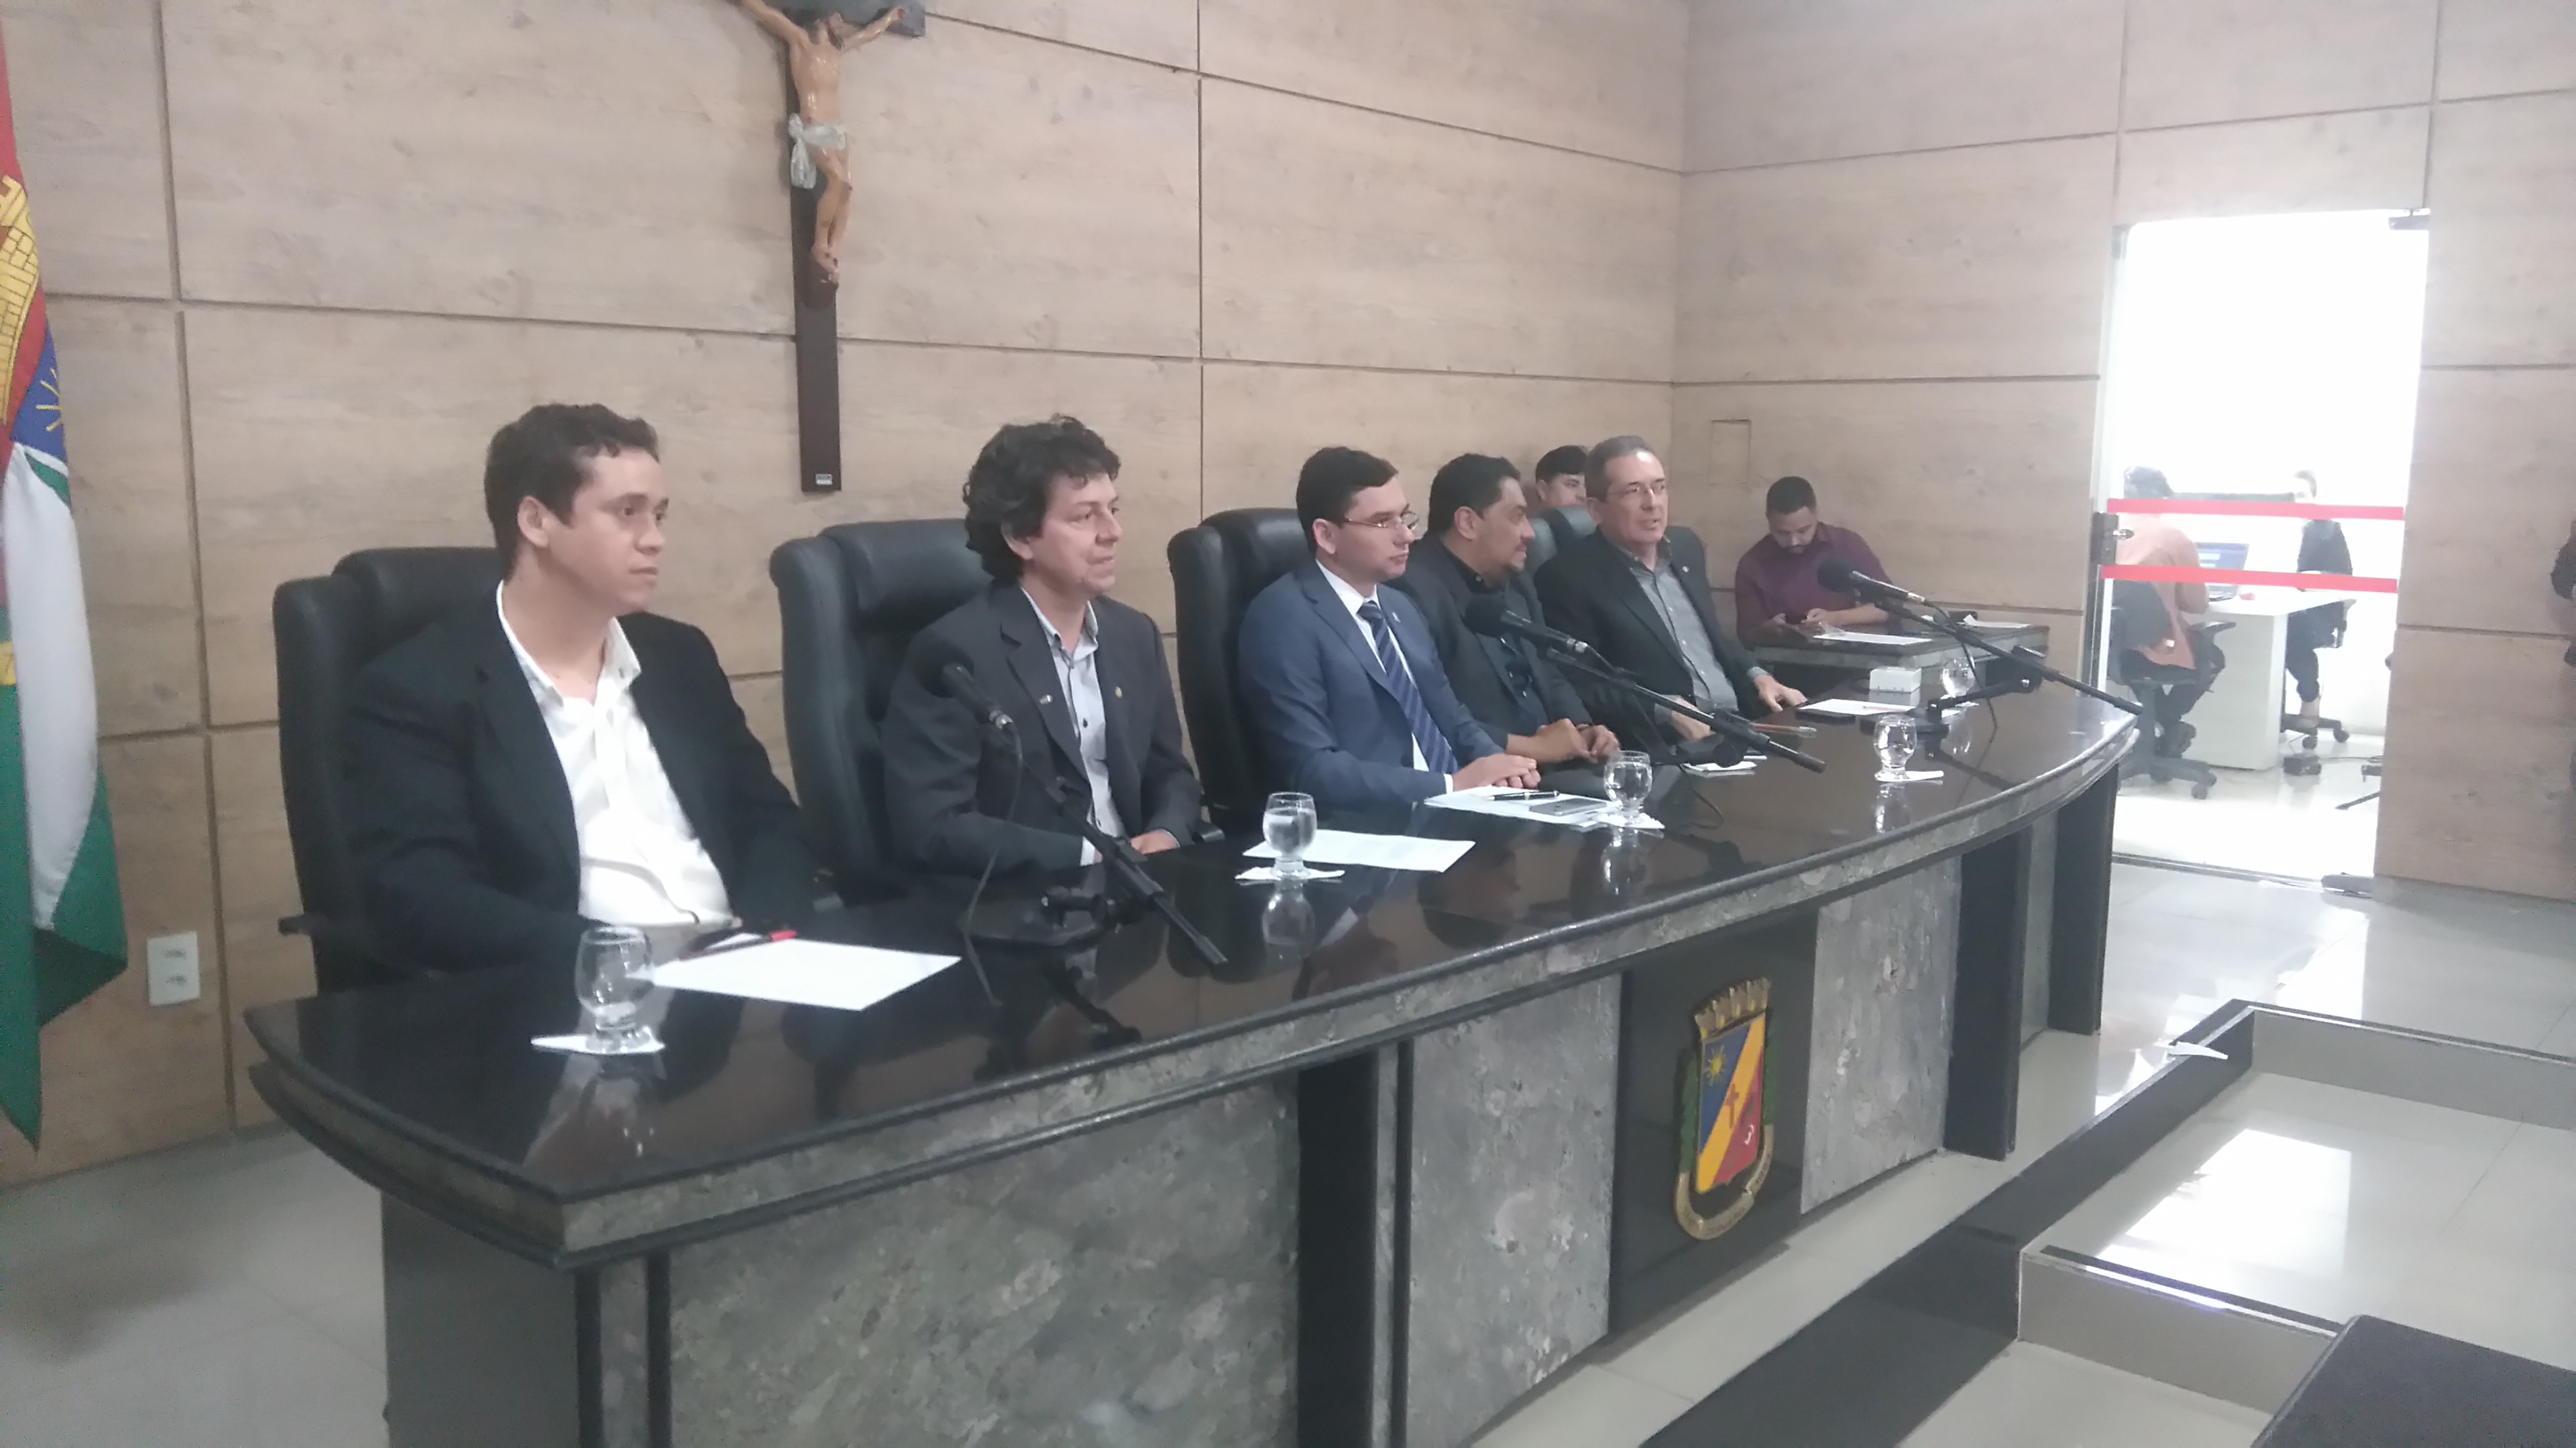 Membros de diversas organizações que compuseram a mesa da audiência pública na Câmara Municipal de Caruaru